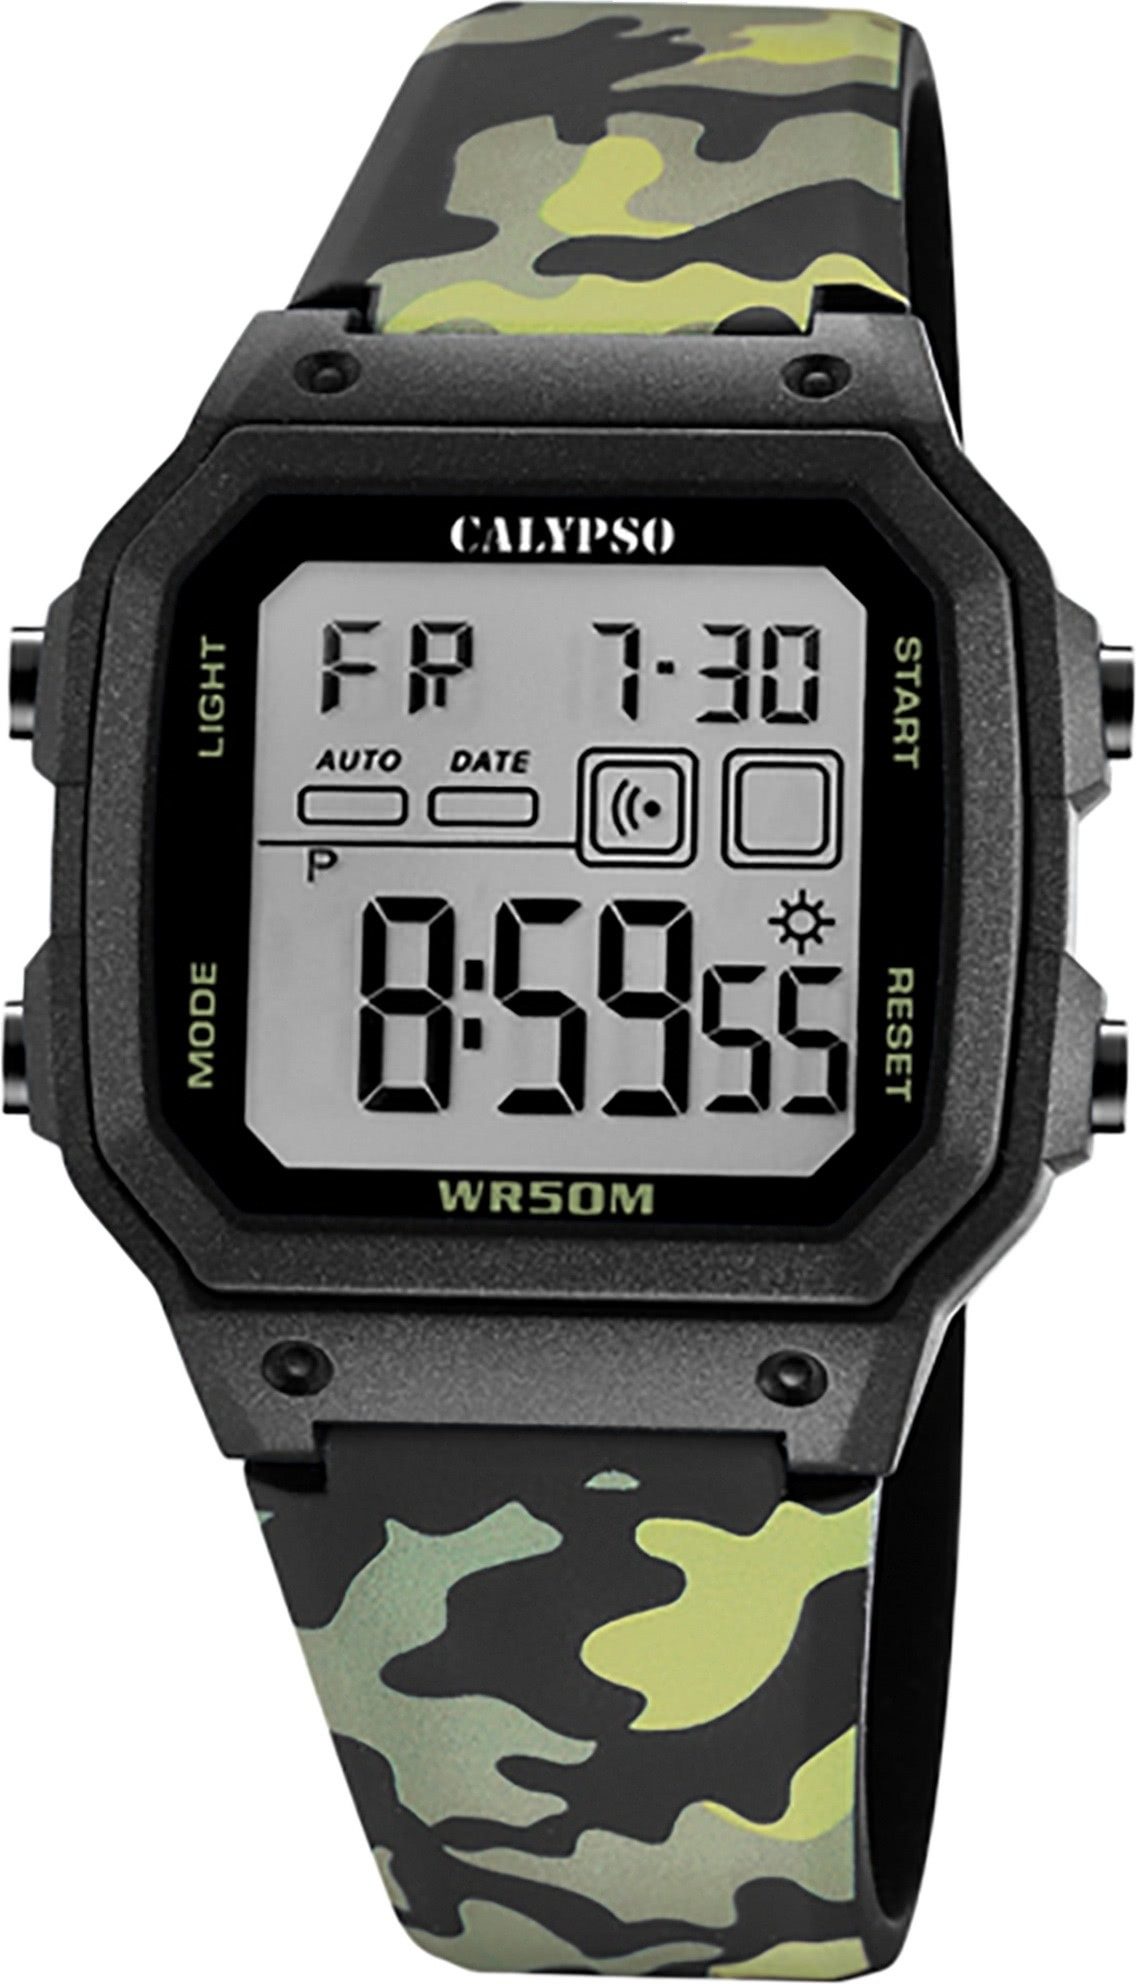 CALYPSO WATCHES Digitaluhr Calypso Herrenuhr Kunststoff schwarz grün, (Digitaluhr), Herrenuhr eckig, groß (ca. 45x39mm) Kunststoffarmband, Sport-Style